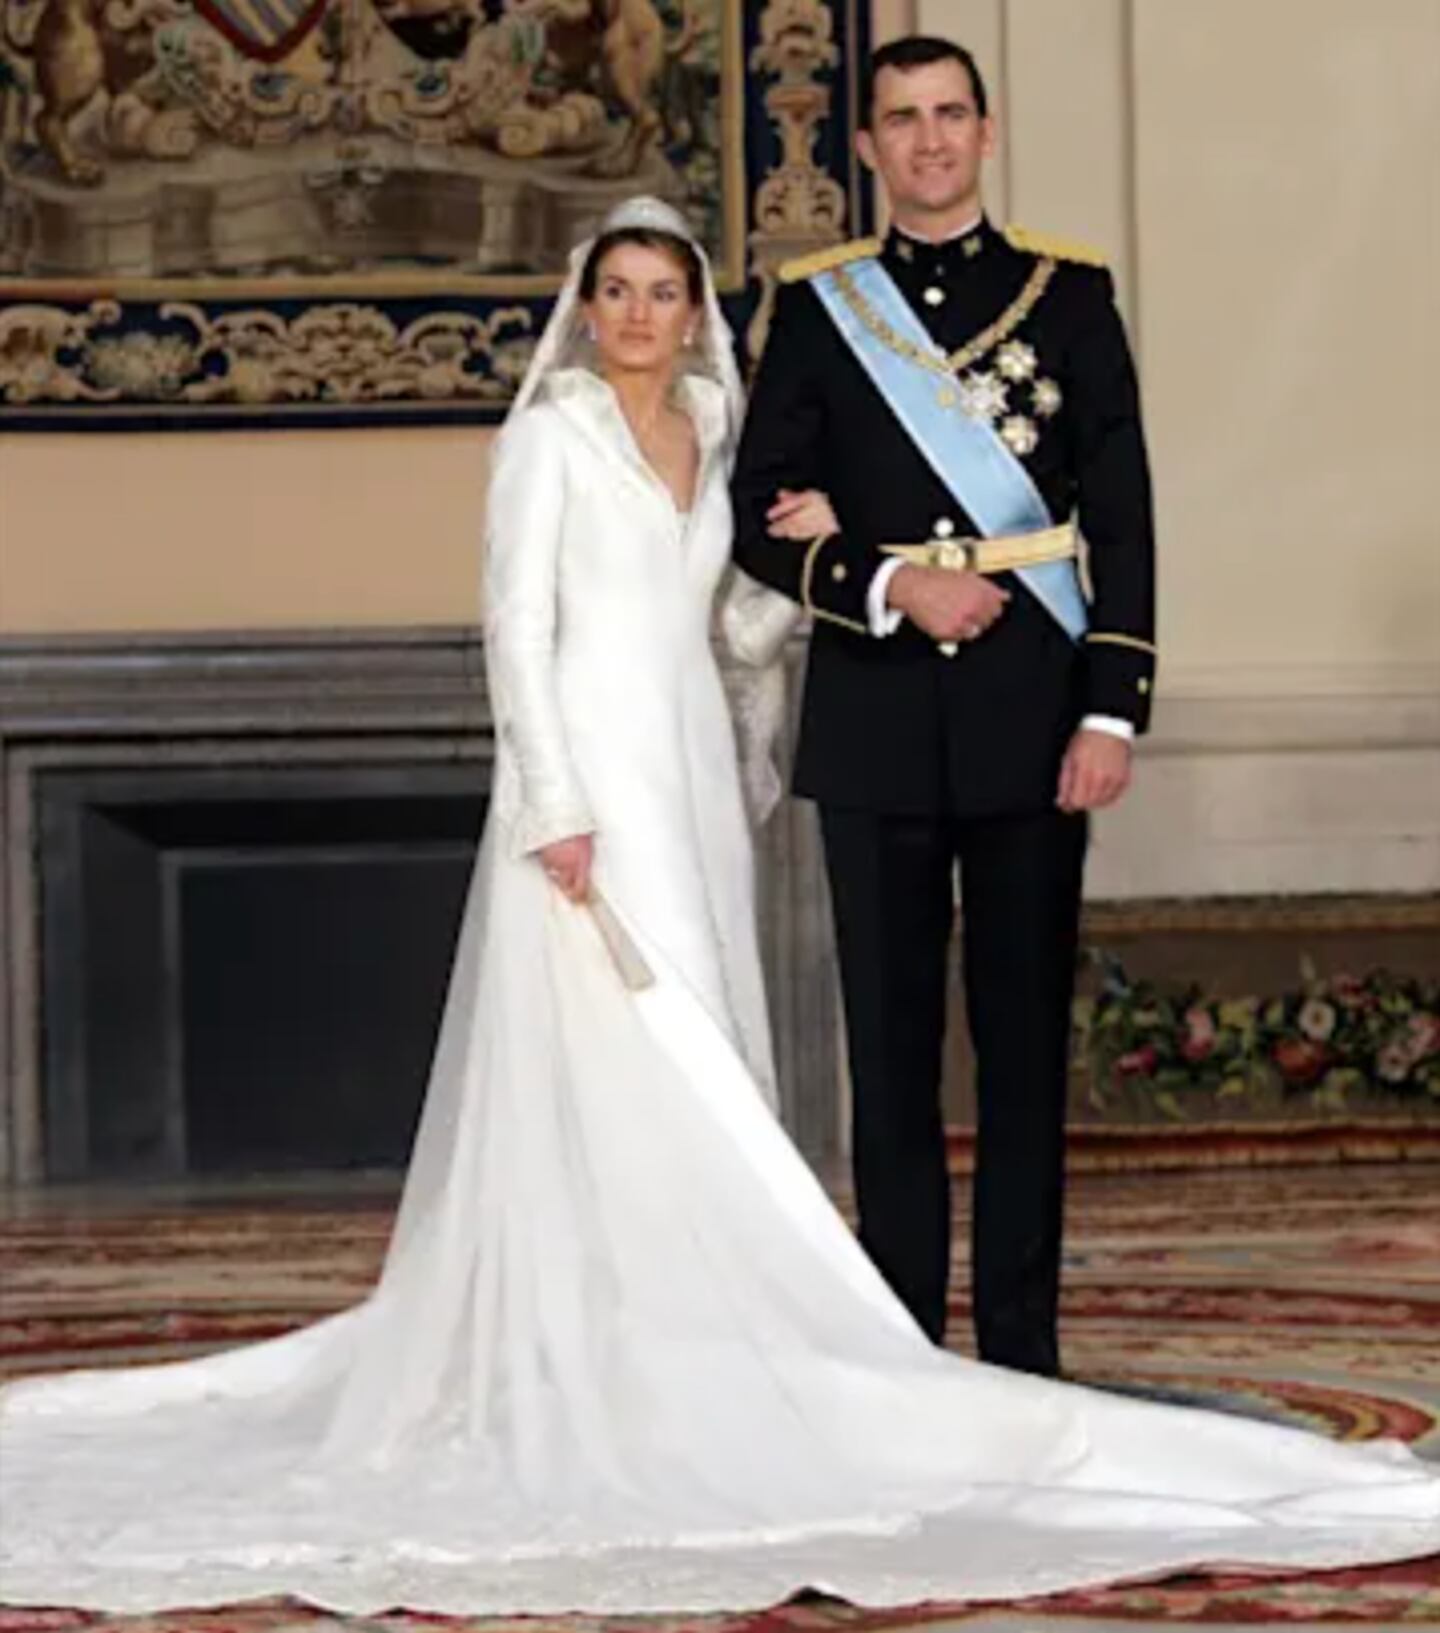 La boda de ensueño de la reina Letizia y el rey Felipe